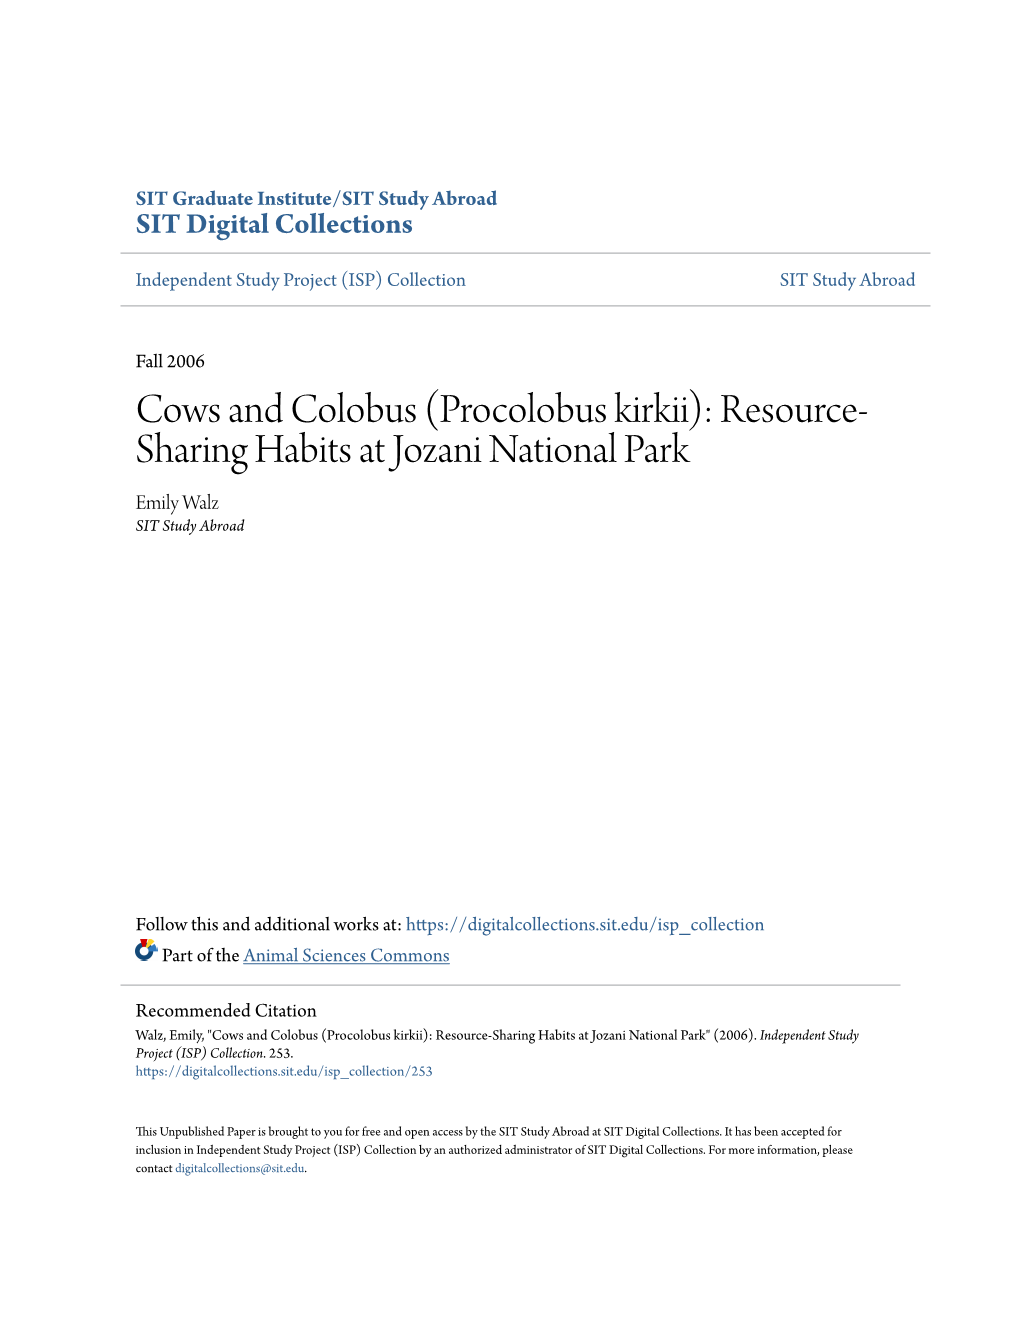 Cows and Colobus (Procolobus Kirkii): Resource-Sharing Habits at Jozani National Park" (2006)